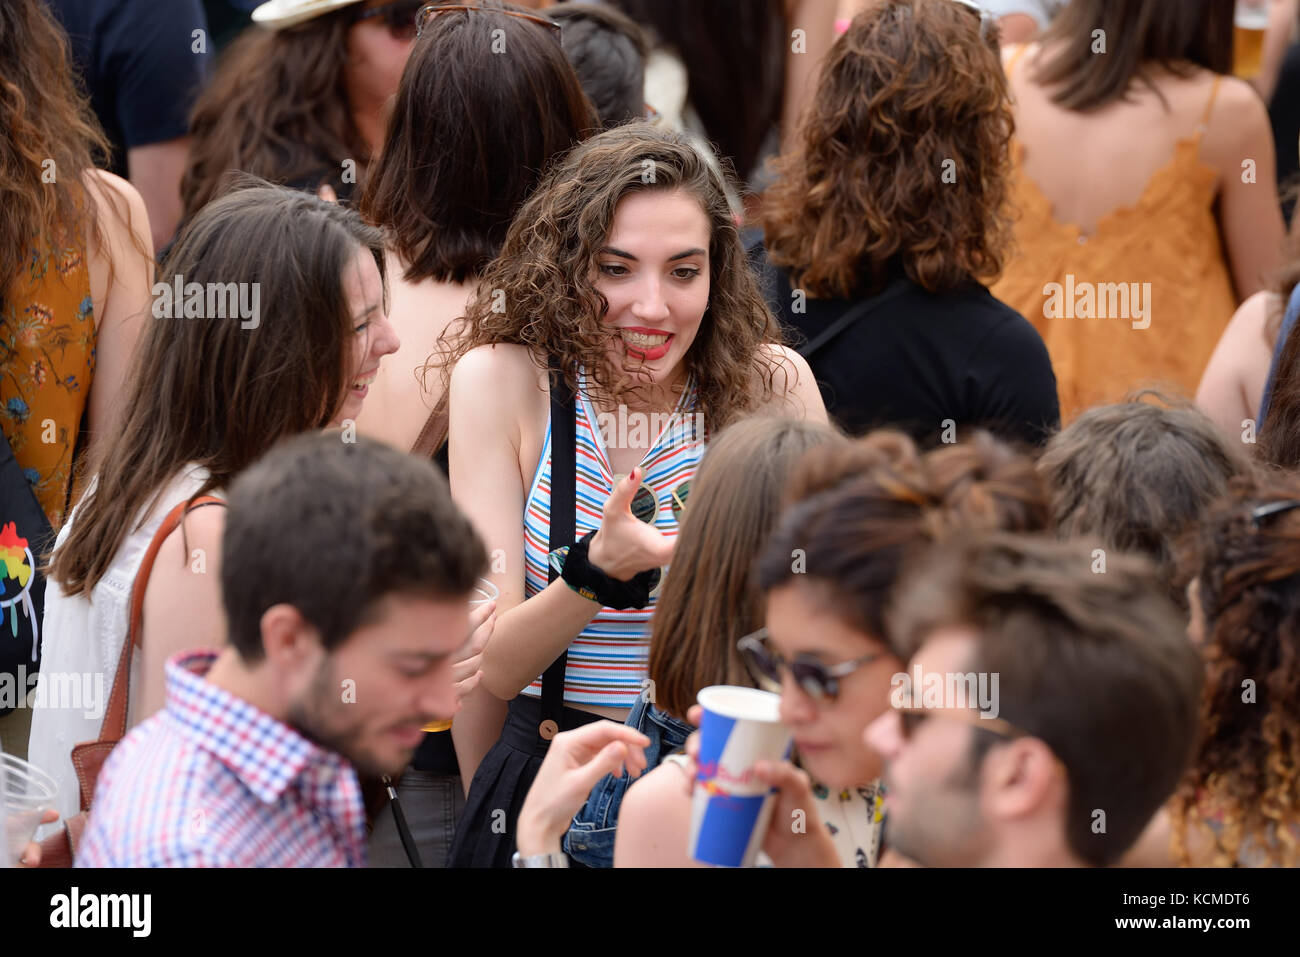 VALENCIA, SPAIN - JUN 11: The crowd at Festival de les Arts on June 11, 2016 in Valencia, Spain. Stock Photo